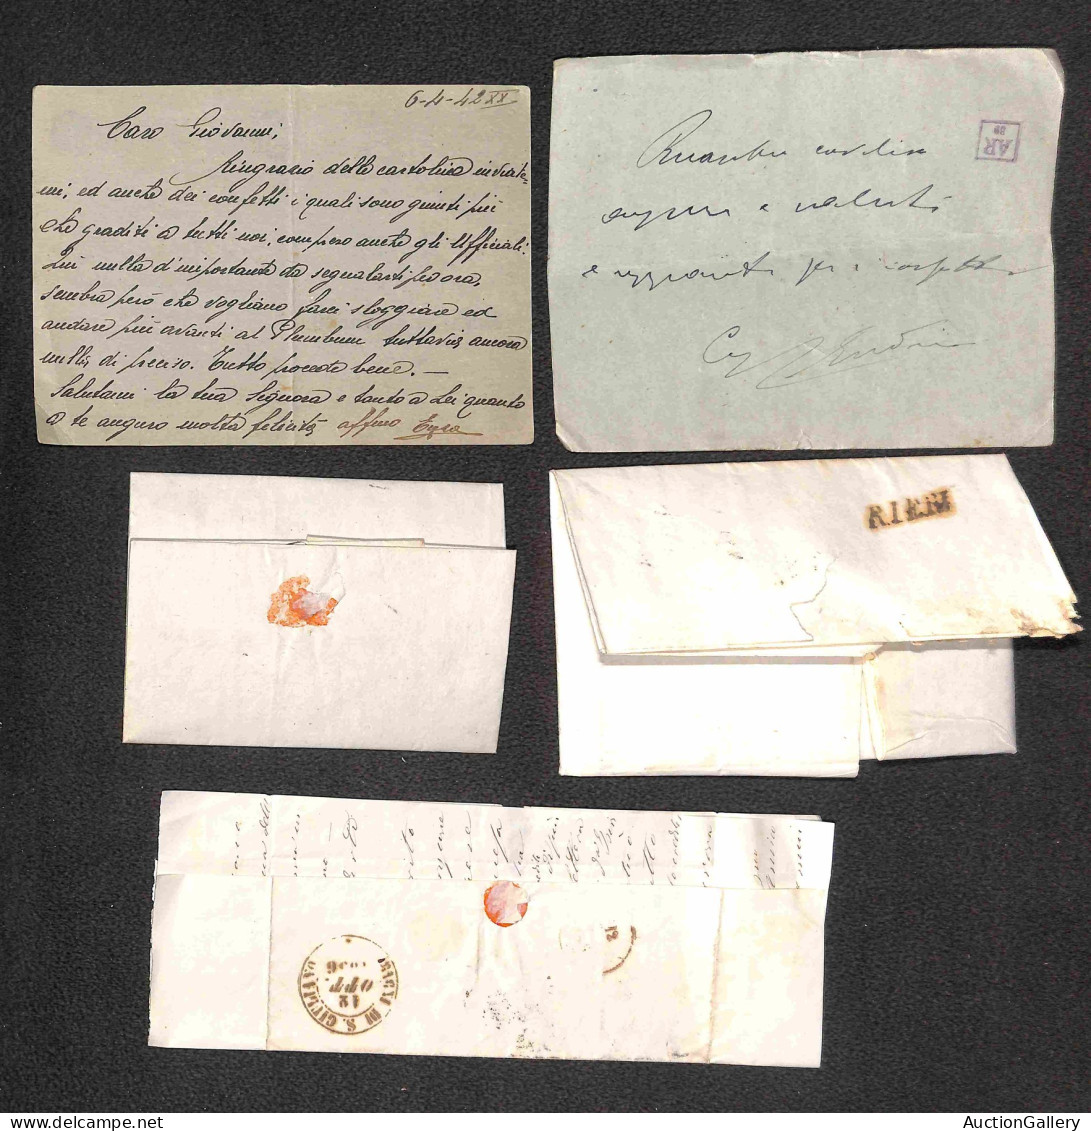 Lotti&Collezioni - Area Italiana - AREA ITALIANA - 1832/1943 - insieme di 33 oggetti postali tra cui prefilateliche bust